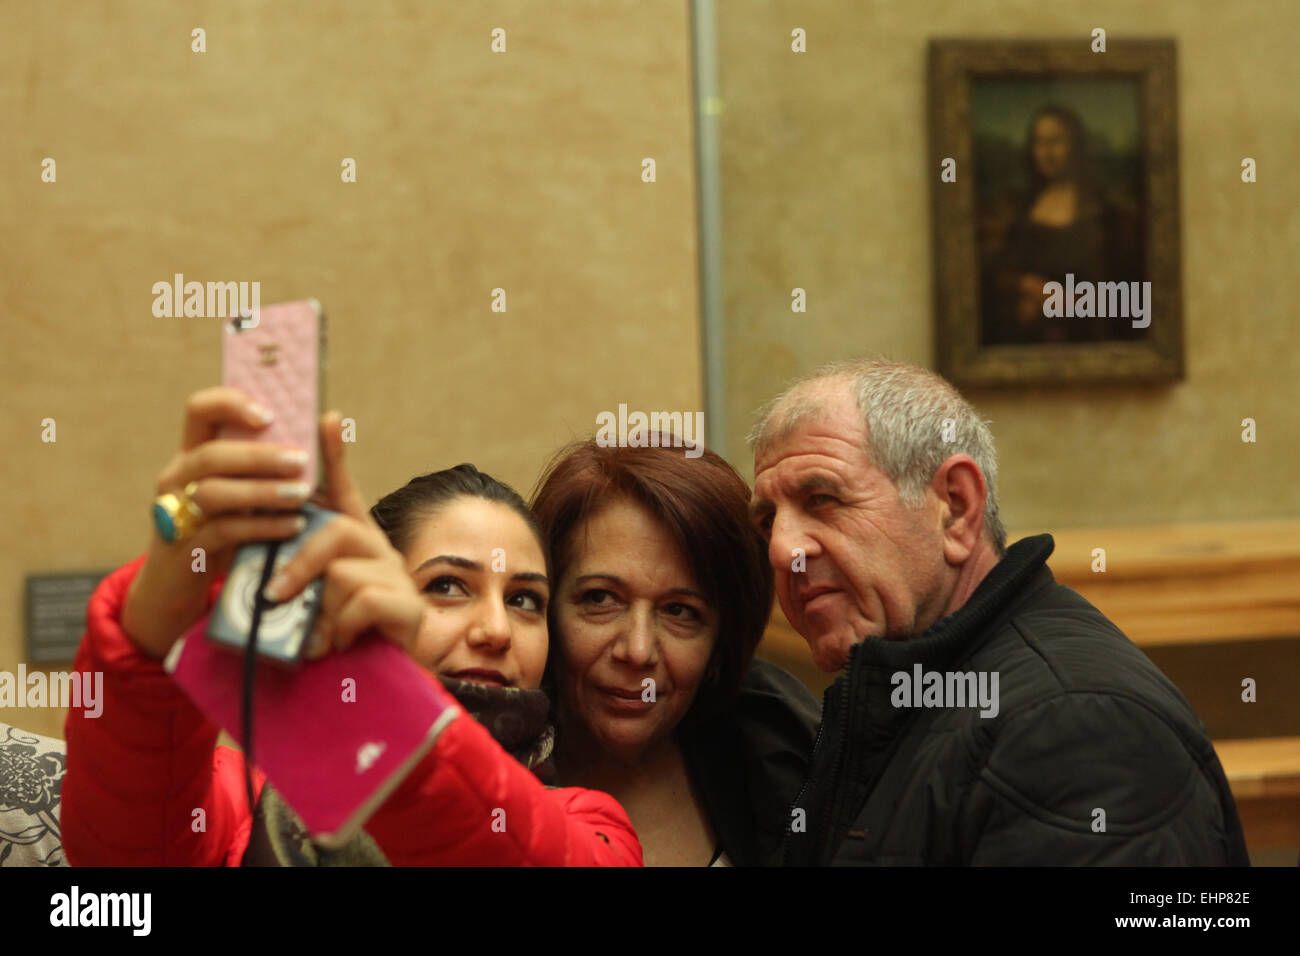 Les visiteurs prendre en face de selfies 'Mona Lisa' ('La Joconde') par Leonardo da Vinci. Musée du Louvre, Paris, France. Banque D'Images